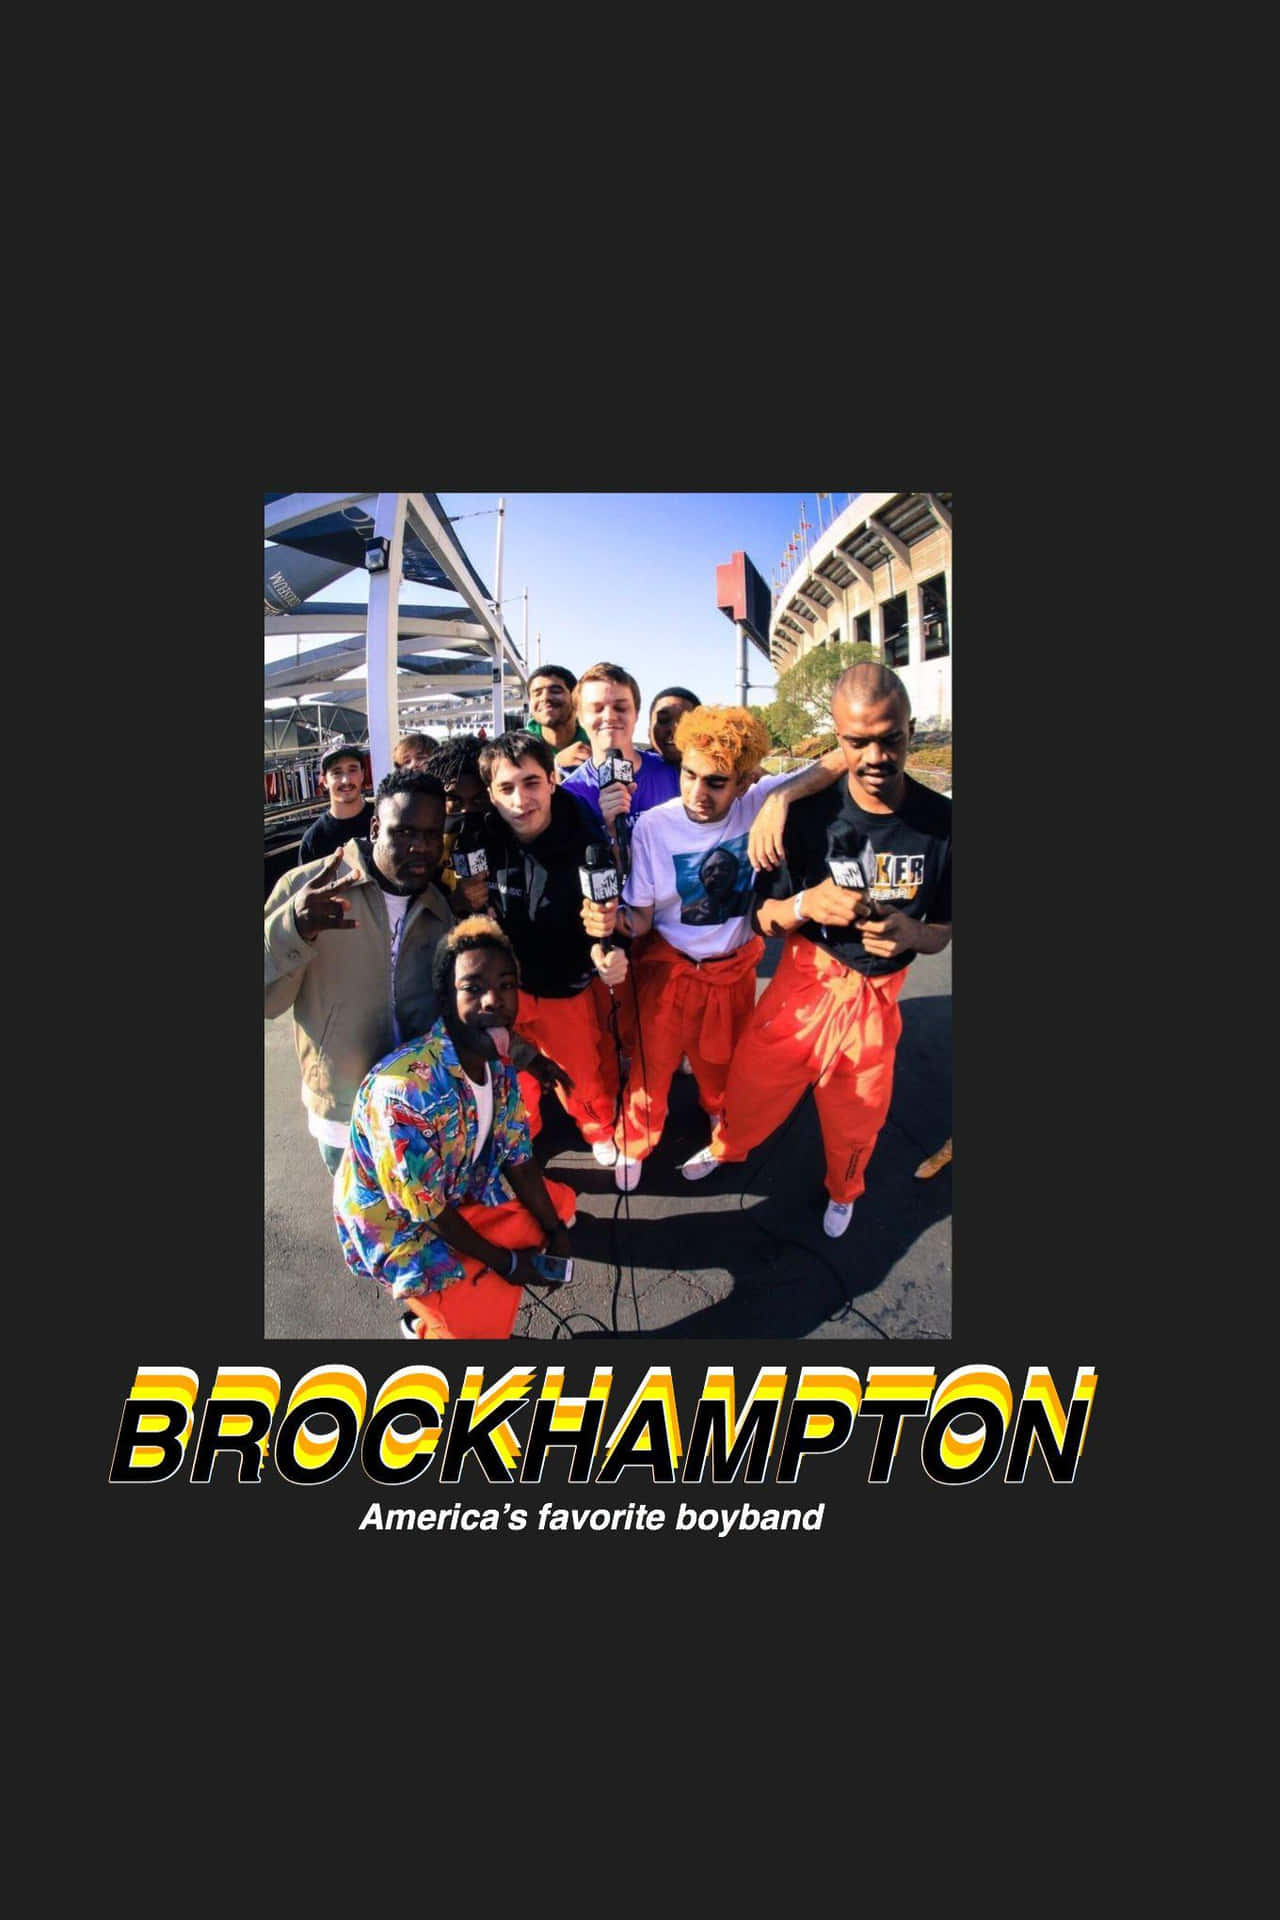 Losmiembros De La Banda Brockhampton Posaron Frente A Un Vibrante Y Colorido Fondo. Fondo de pantalla